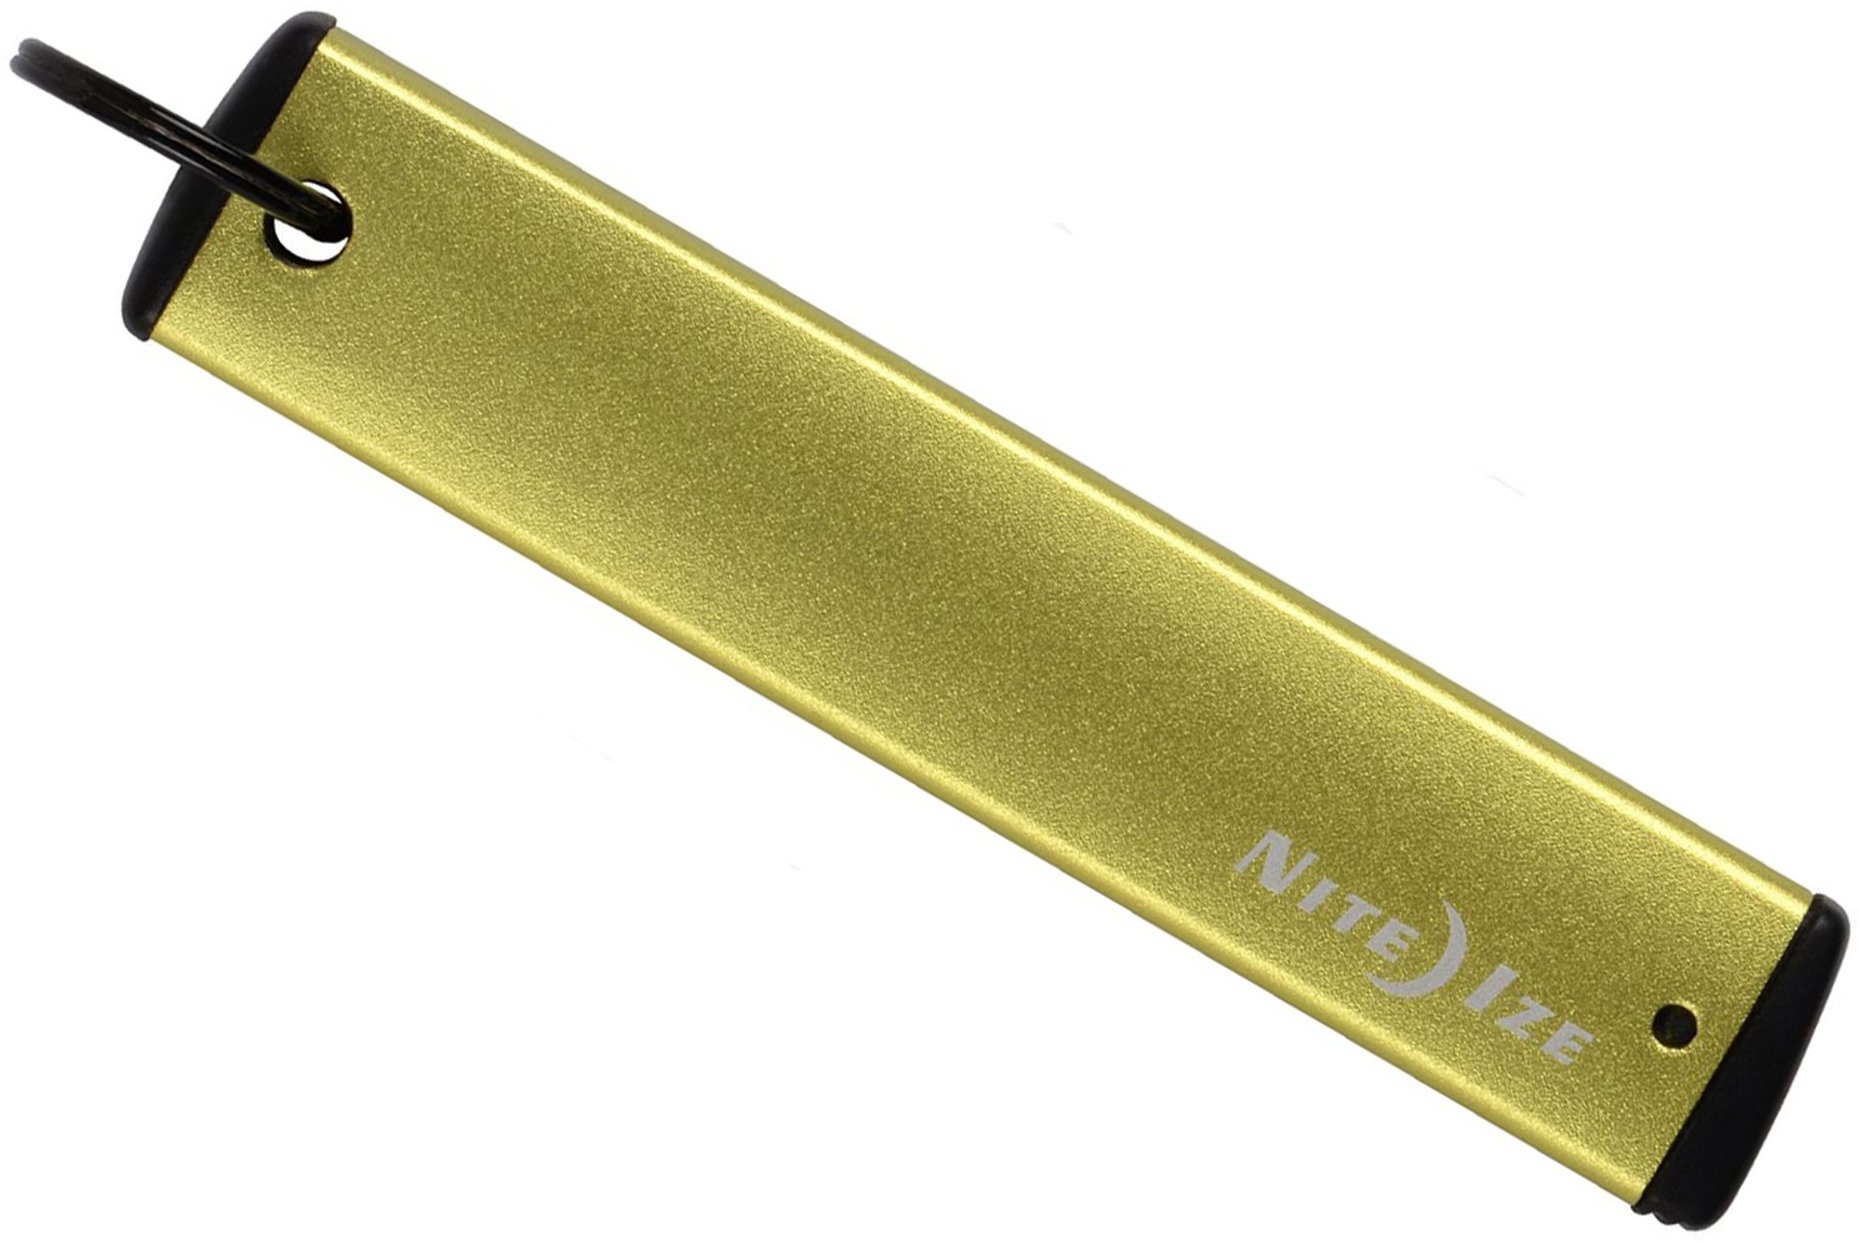 Брелок для ключей Nite Ize PowerKey Micro-USB PKYU-17-R7, лайм - фото